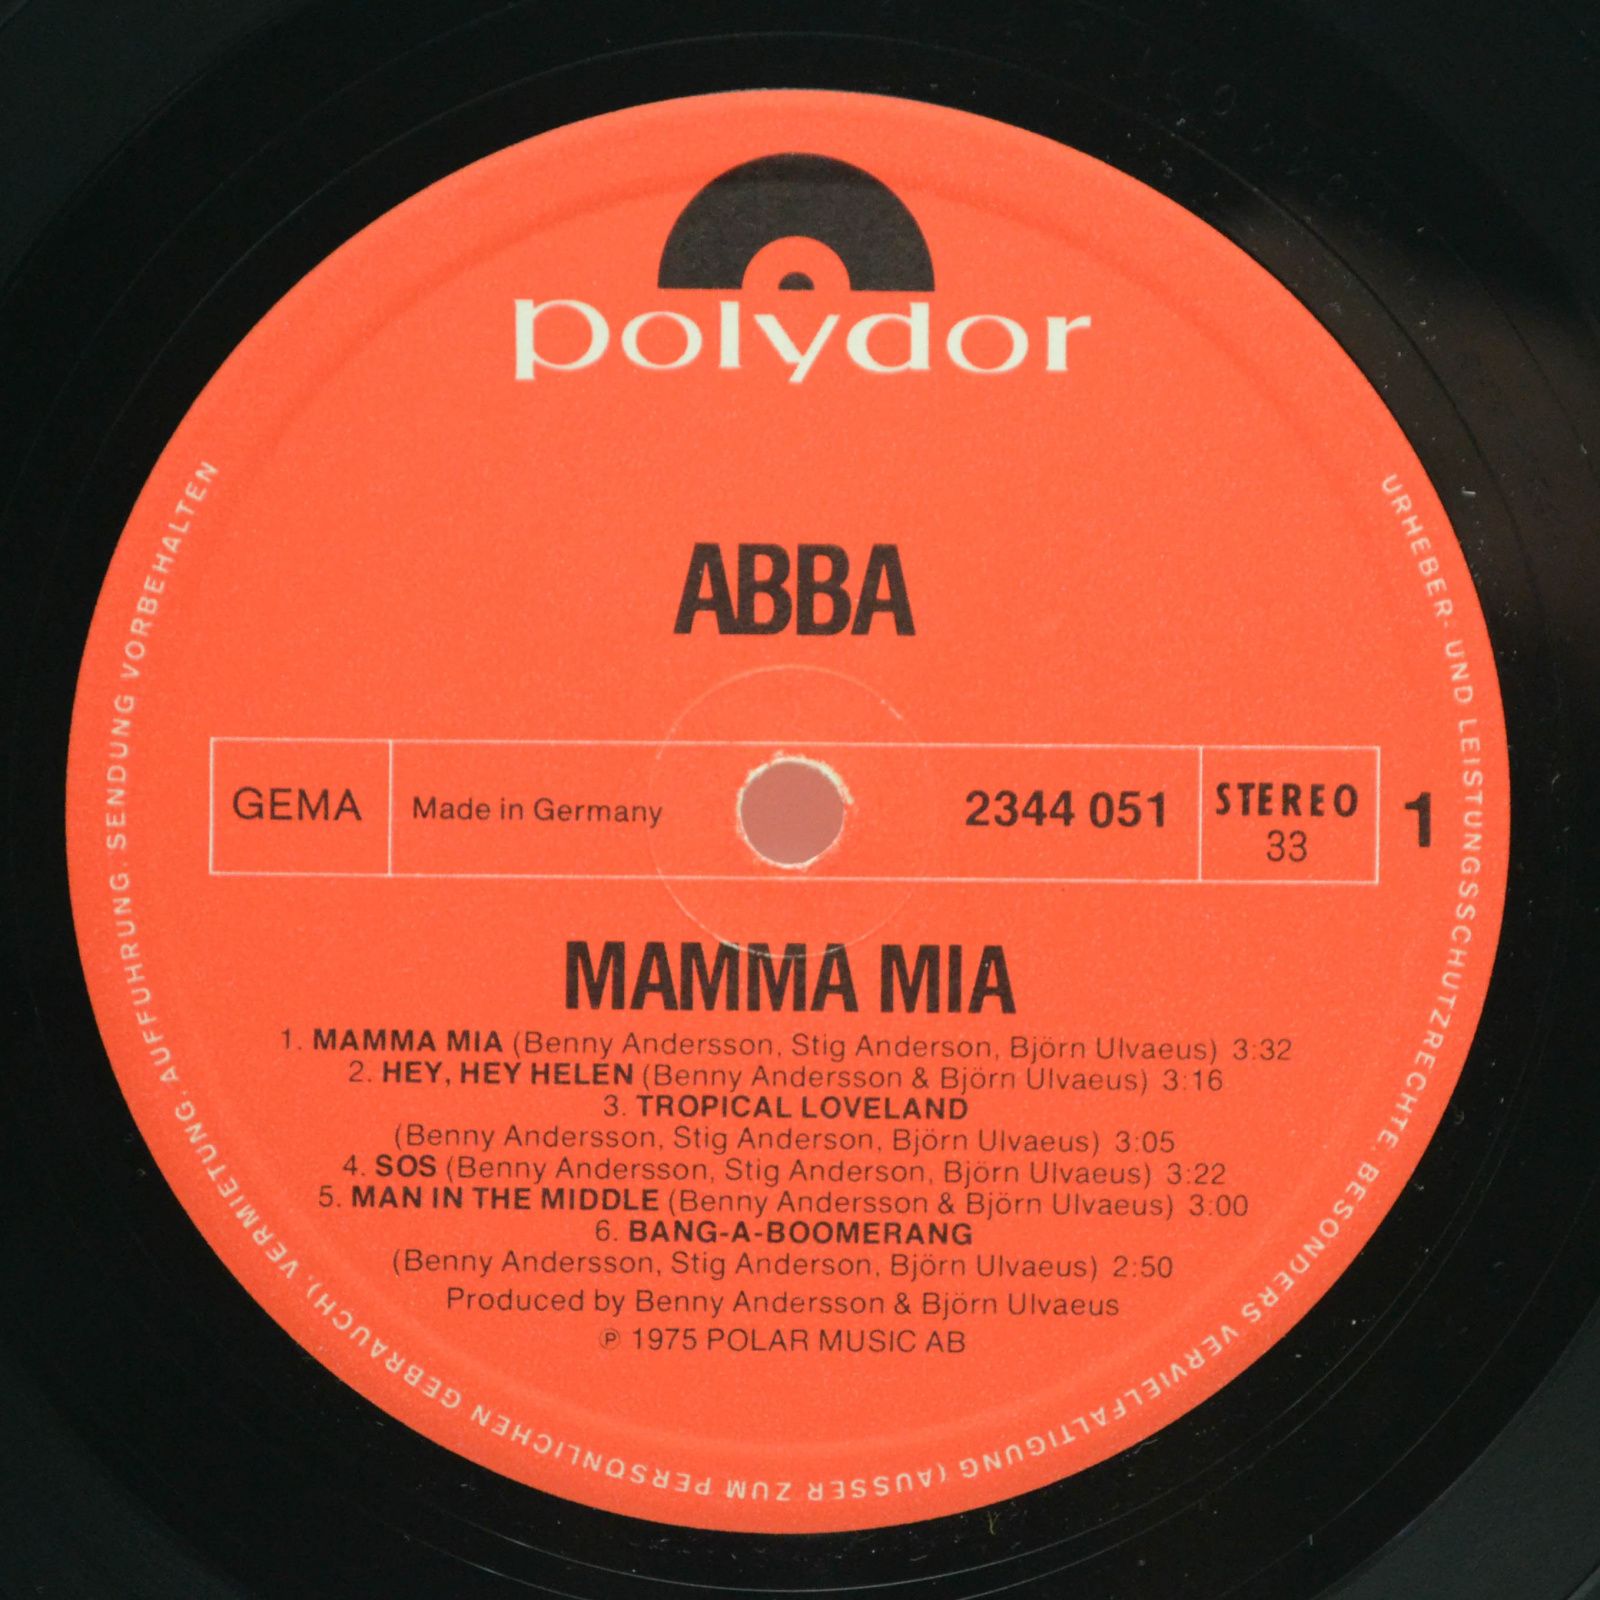 ABBA — Mamma Mia, 1975